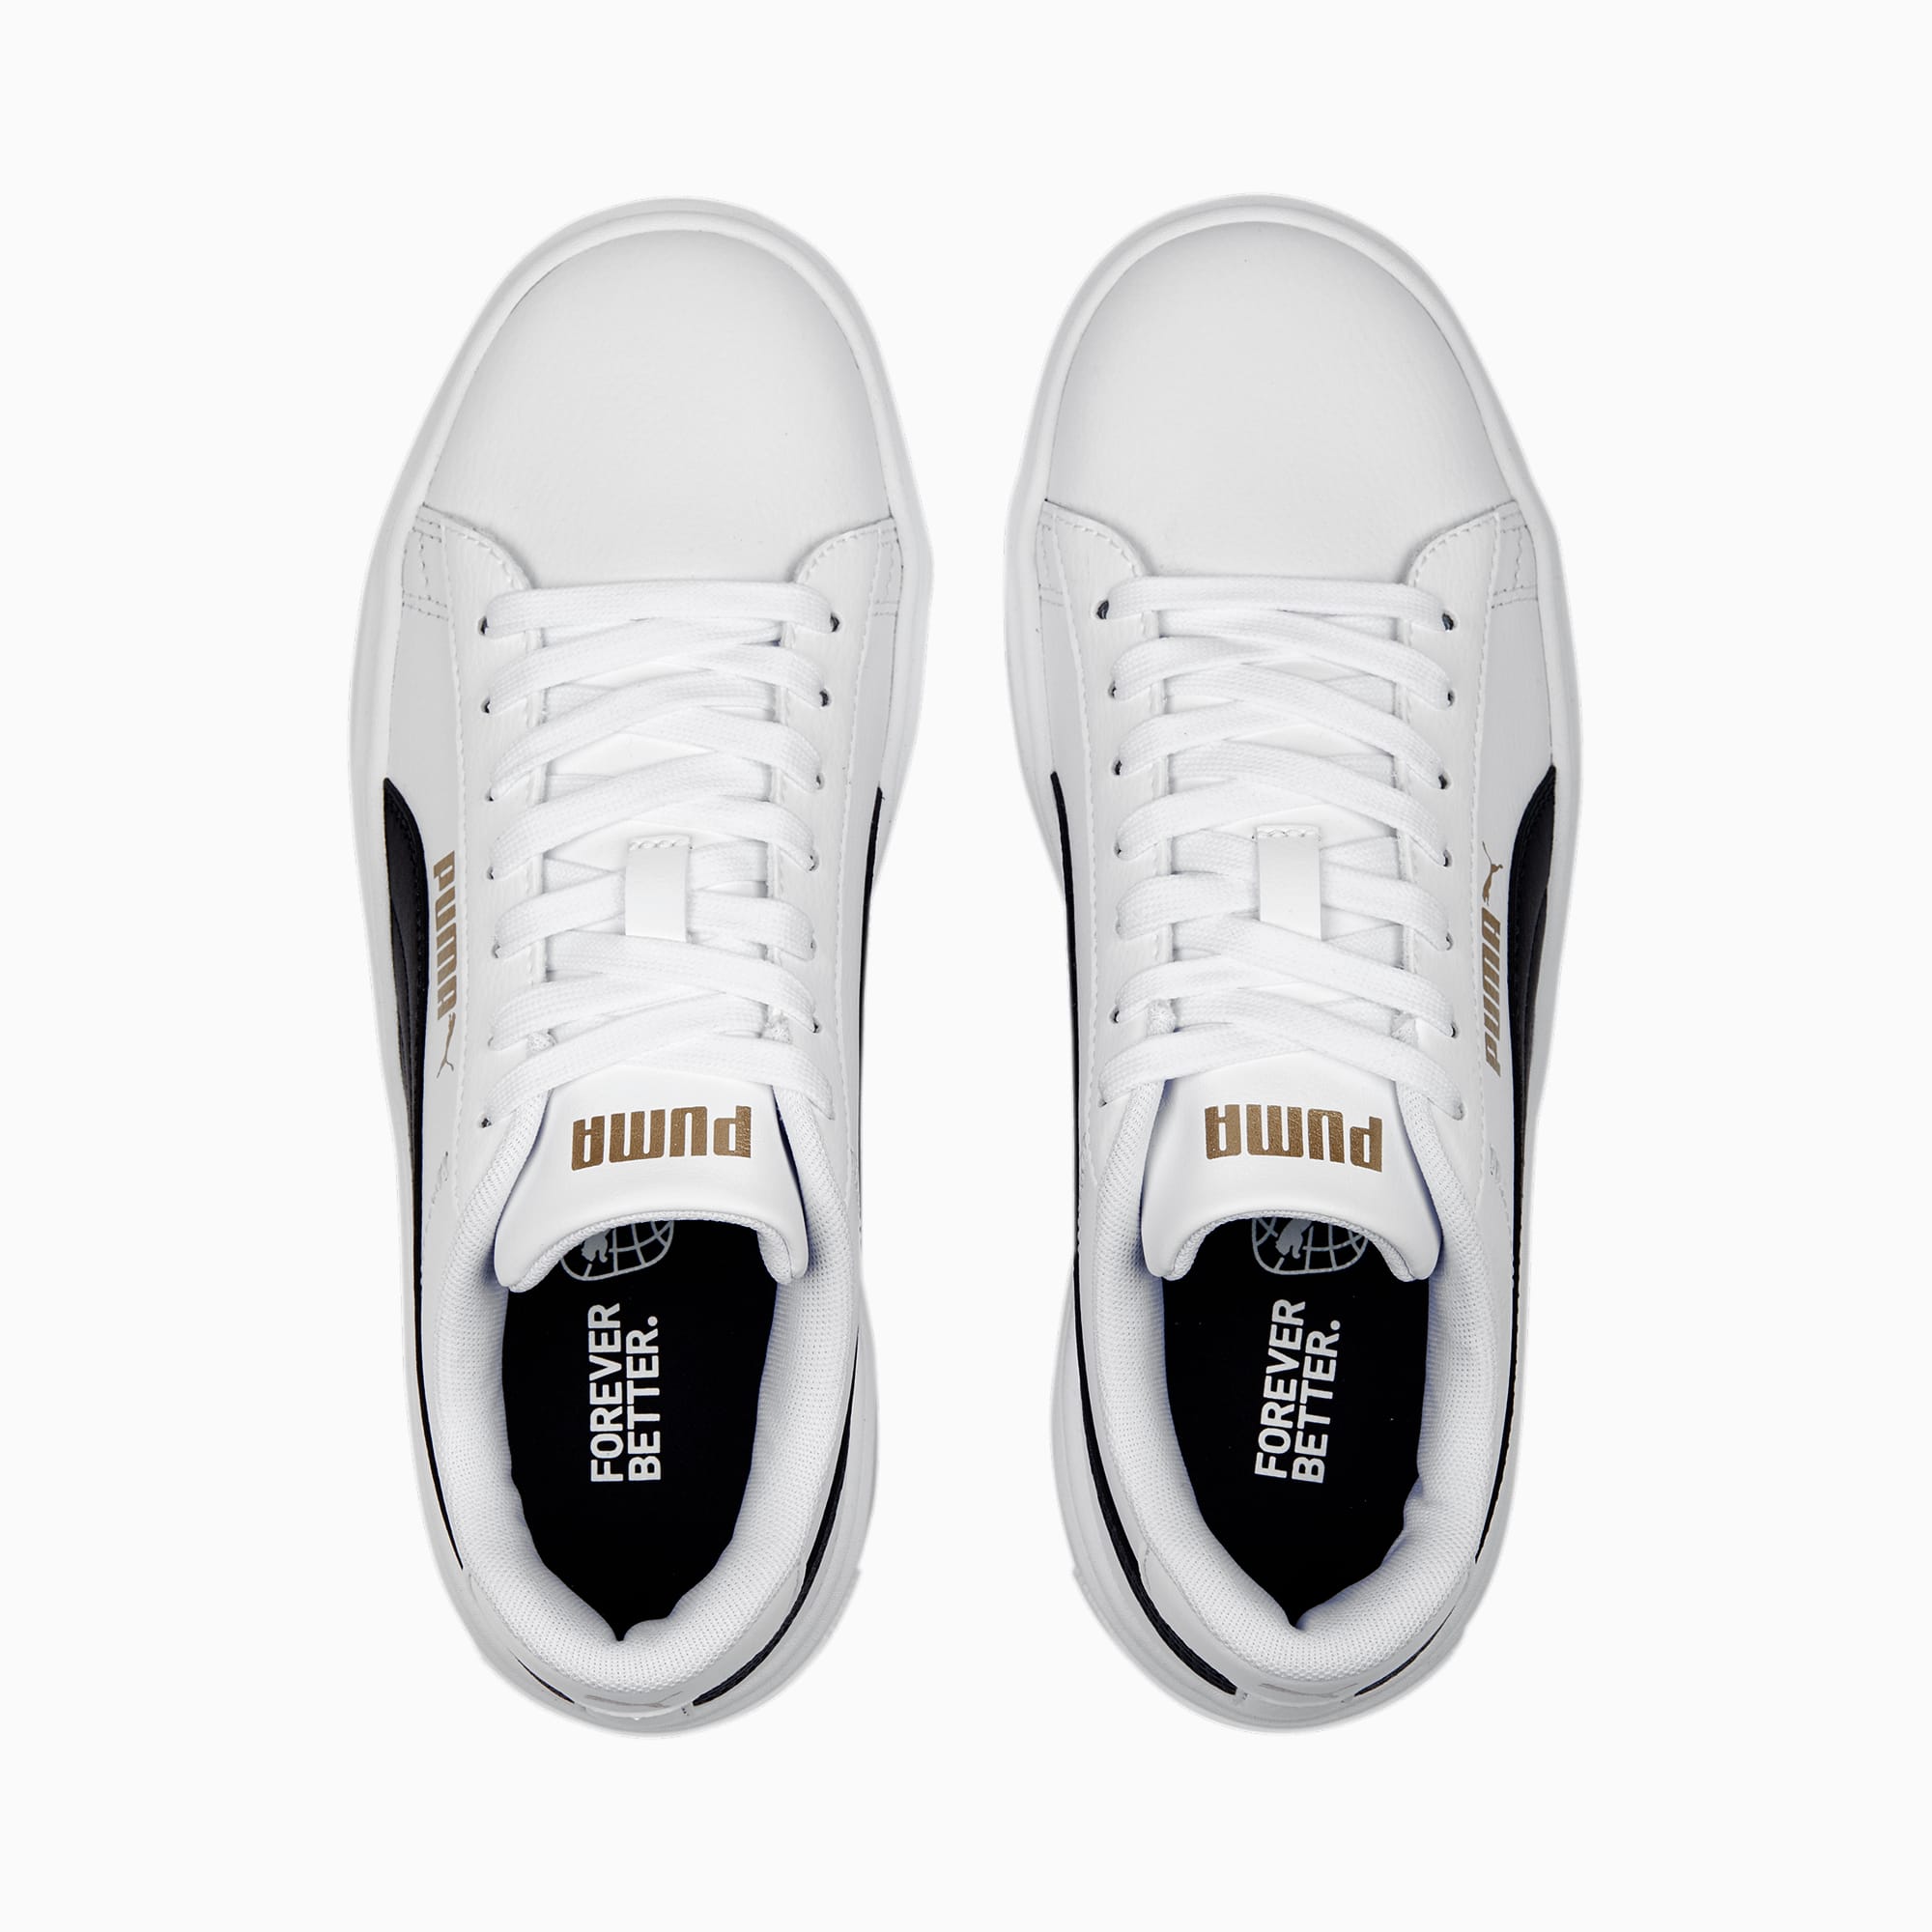 NEW PUMA Women's Smash Platform Sneaker Shoes - PICK SIZE - WHITE